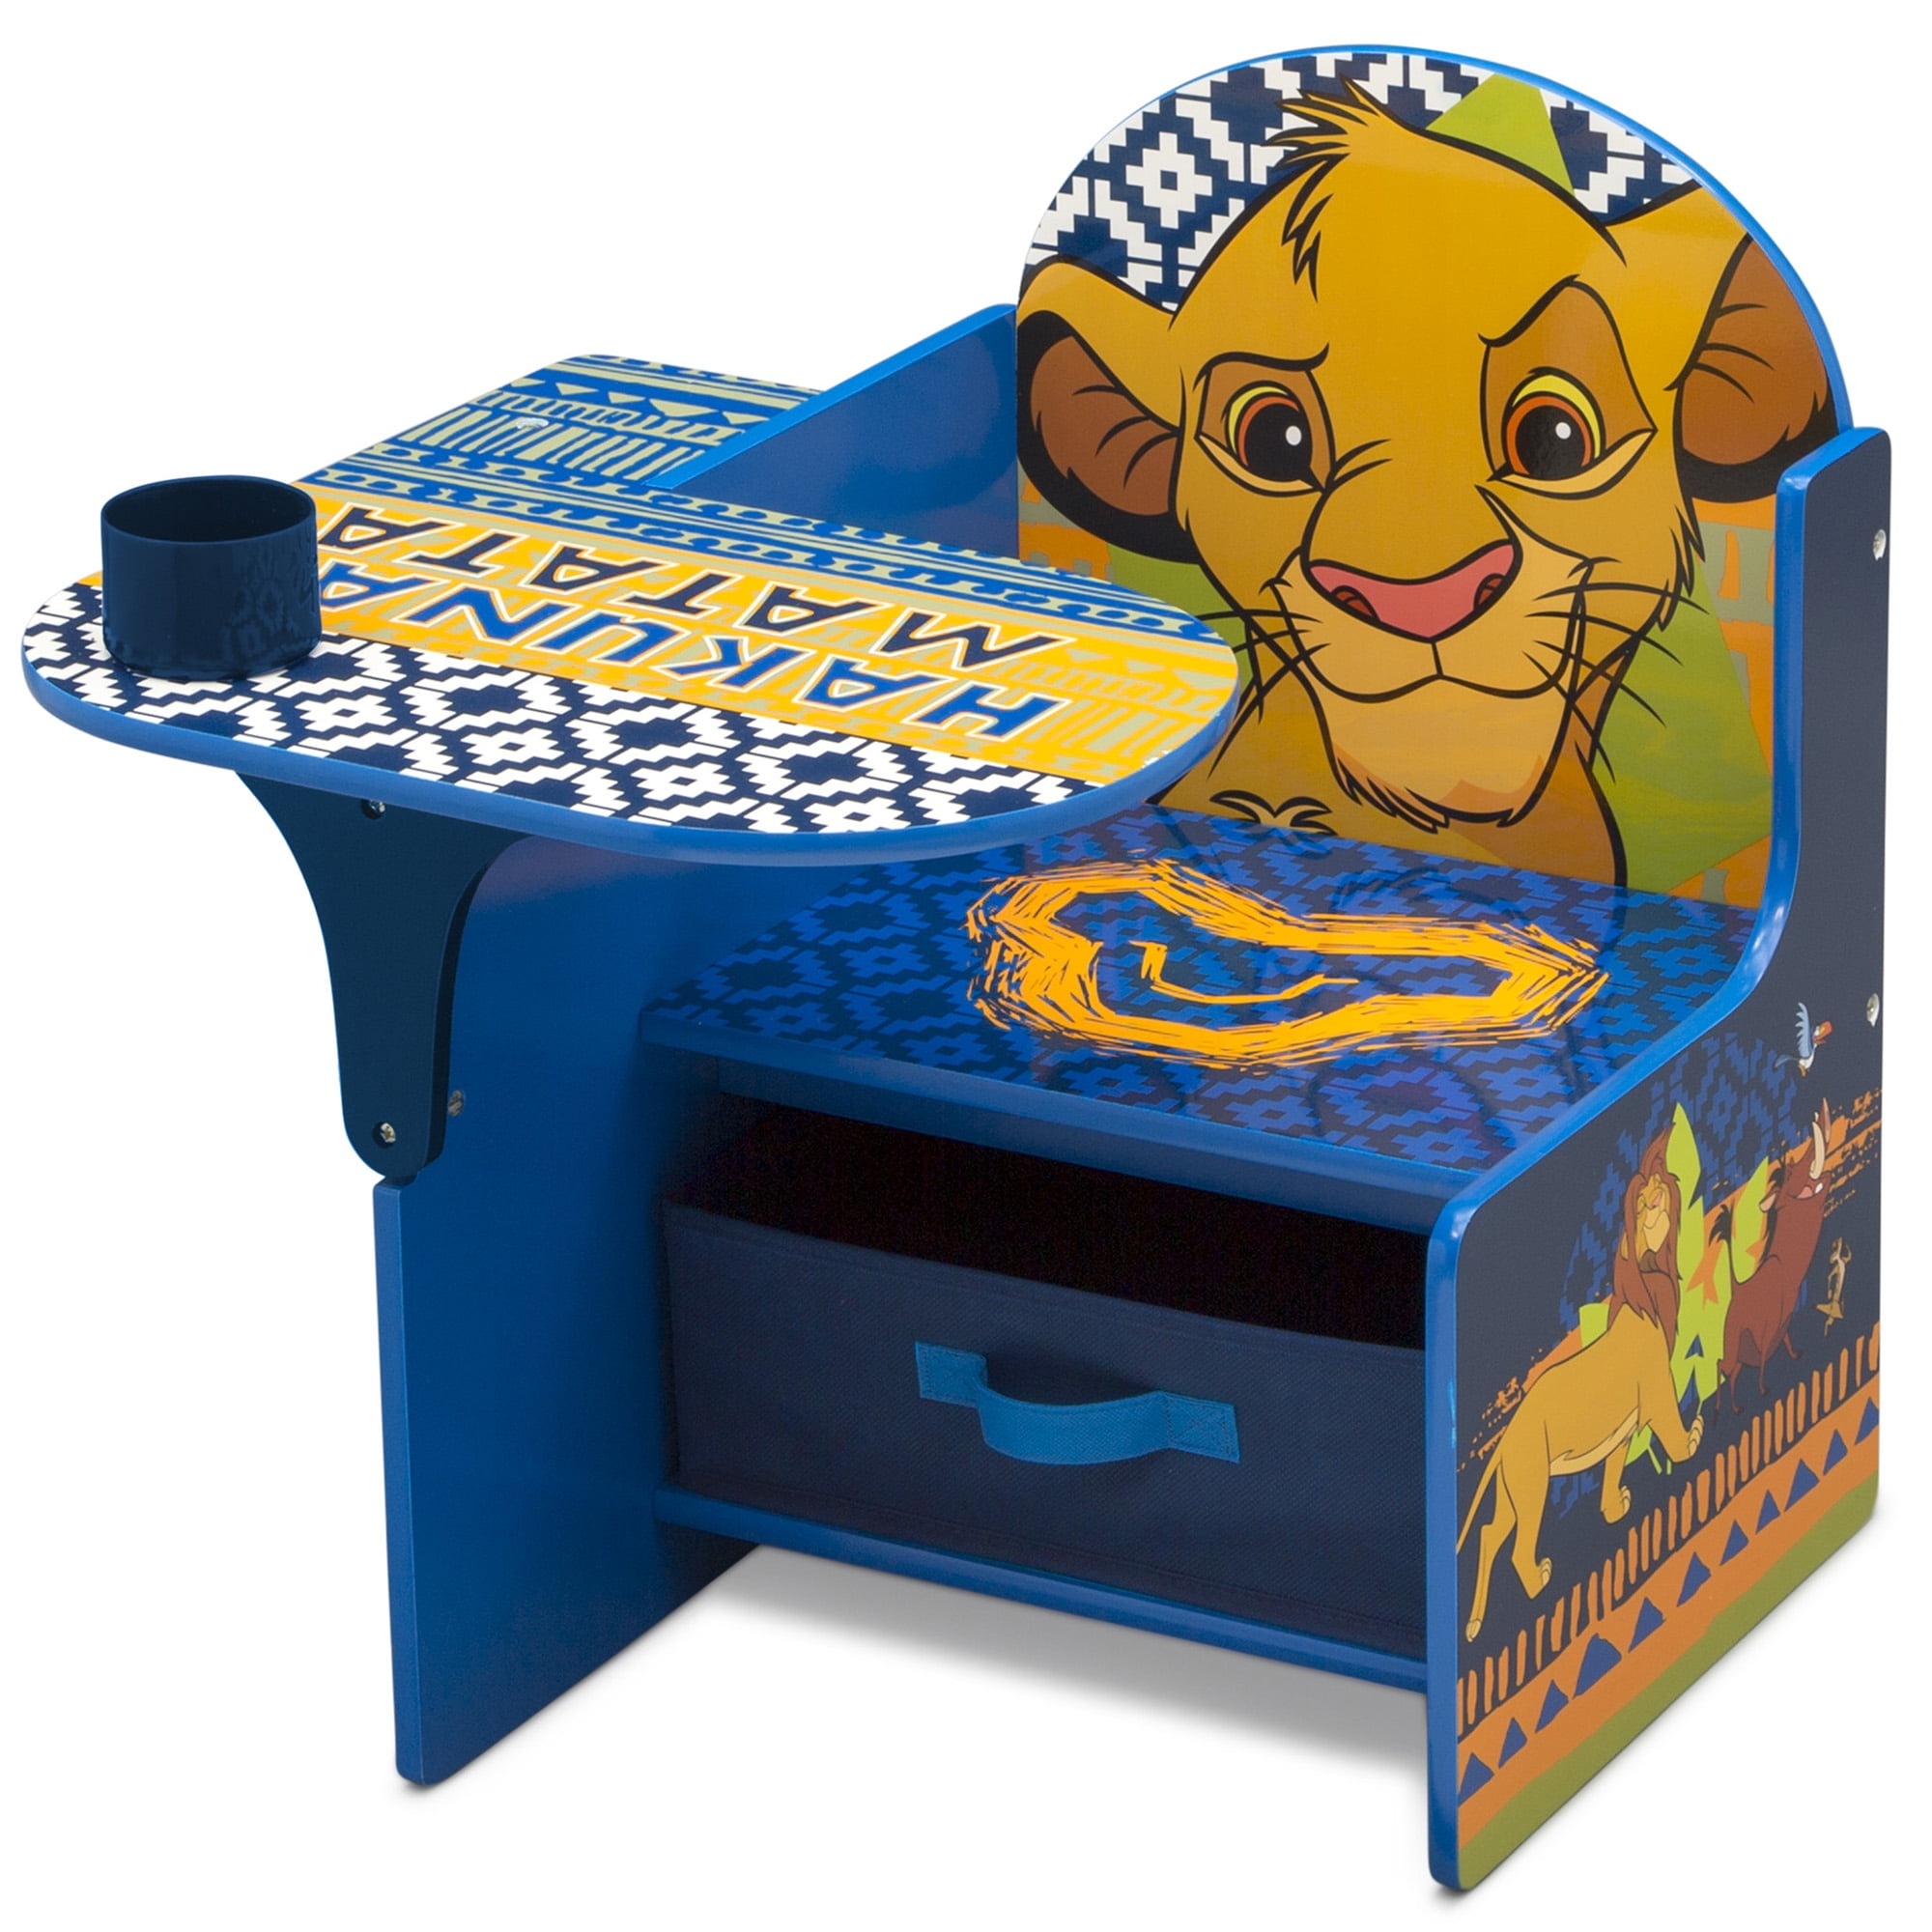 The Lion King Chair Desk with Storage Bin by Delta Children 